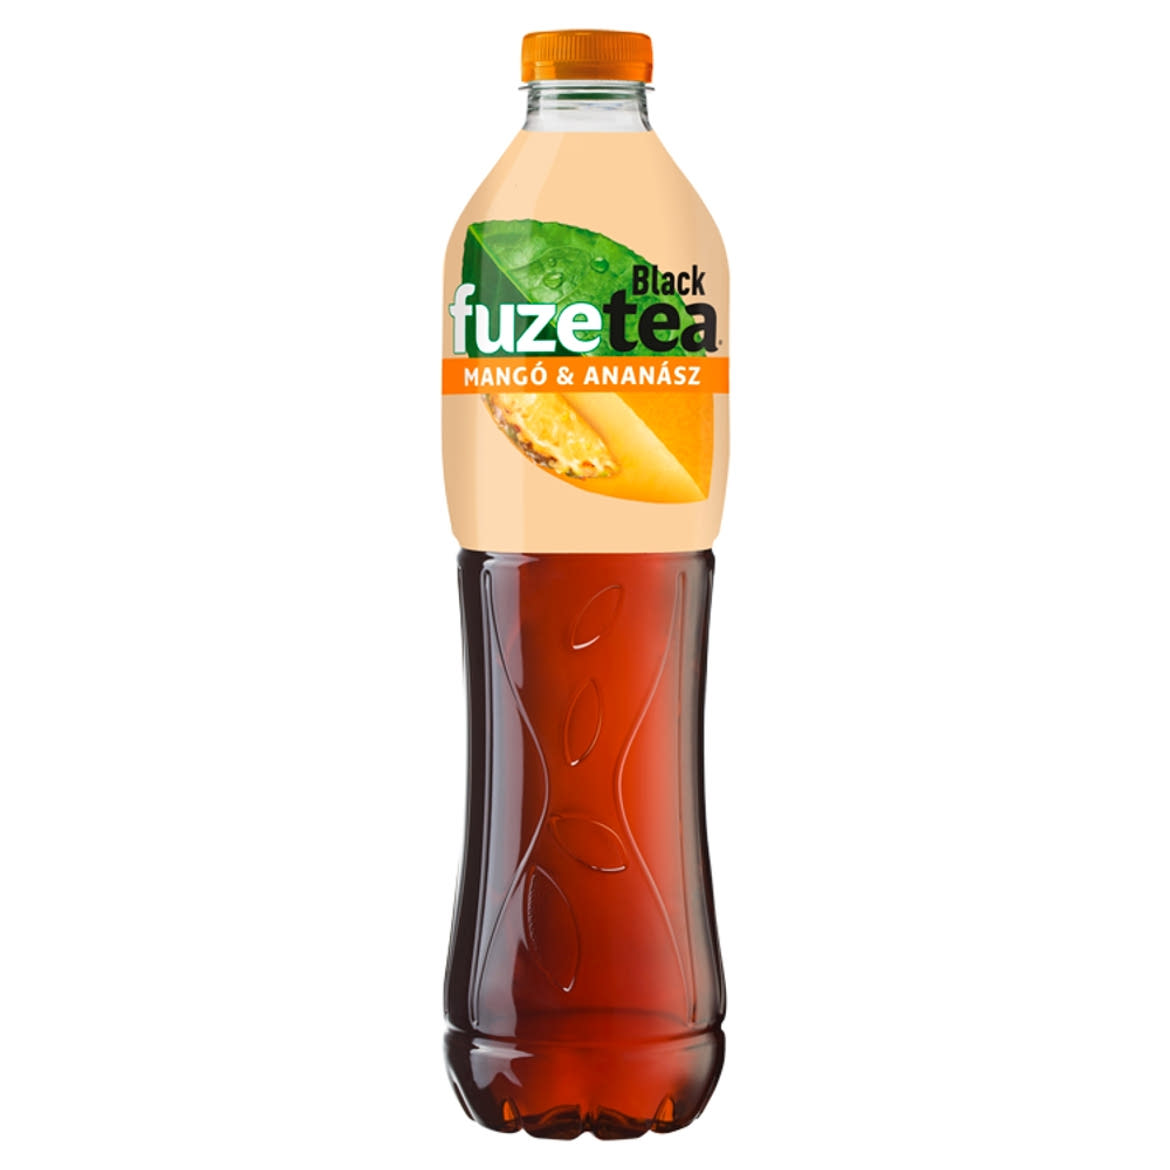 FUZETEA Mangó-Ananász szénsavmentes üdítőital fekete tea kivonattal cukorral & édesítőszerrel 1,5 l